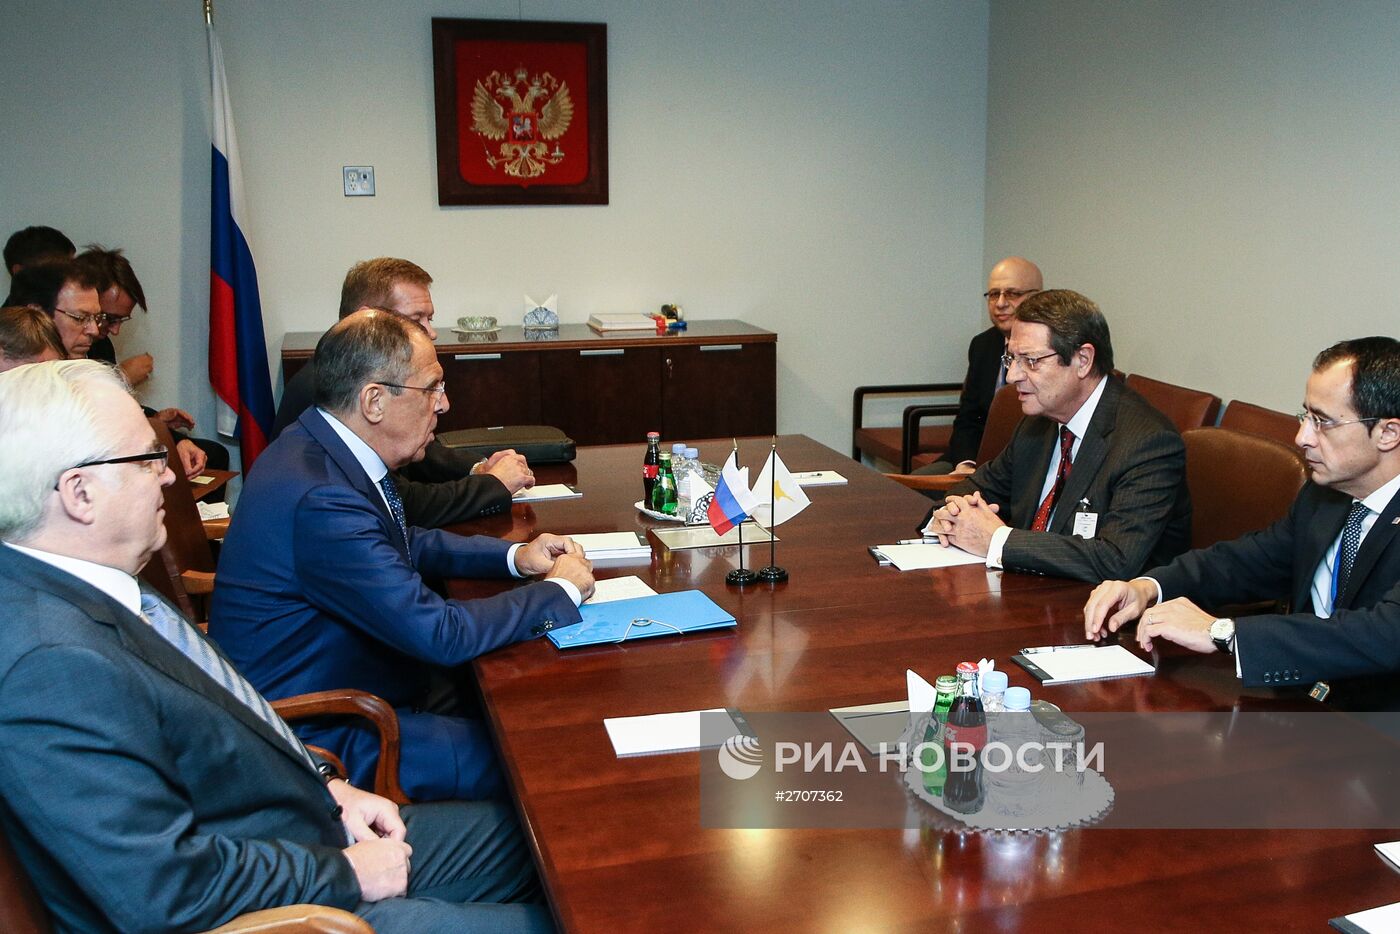 Министр иностранных дел РФ С.Лавров провел встречи в Нью-Йорке